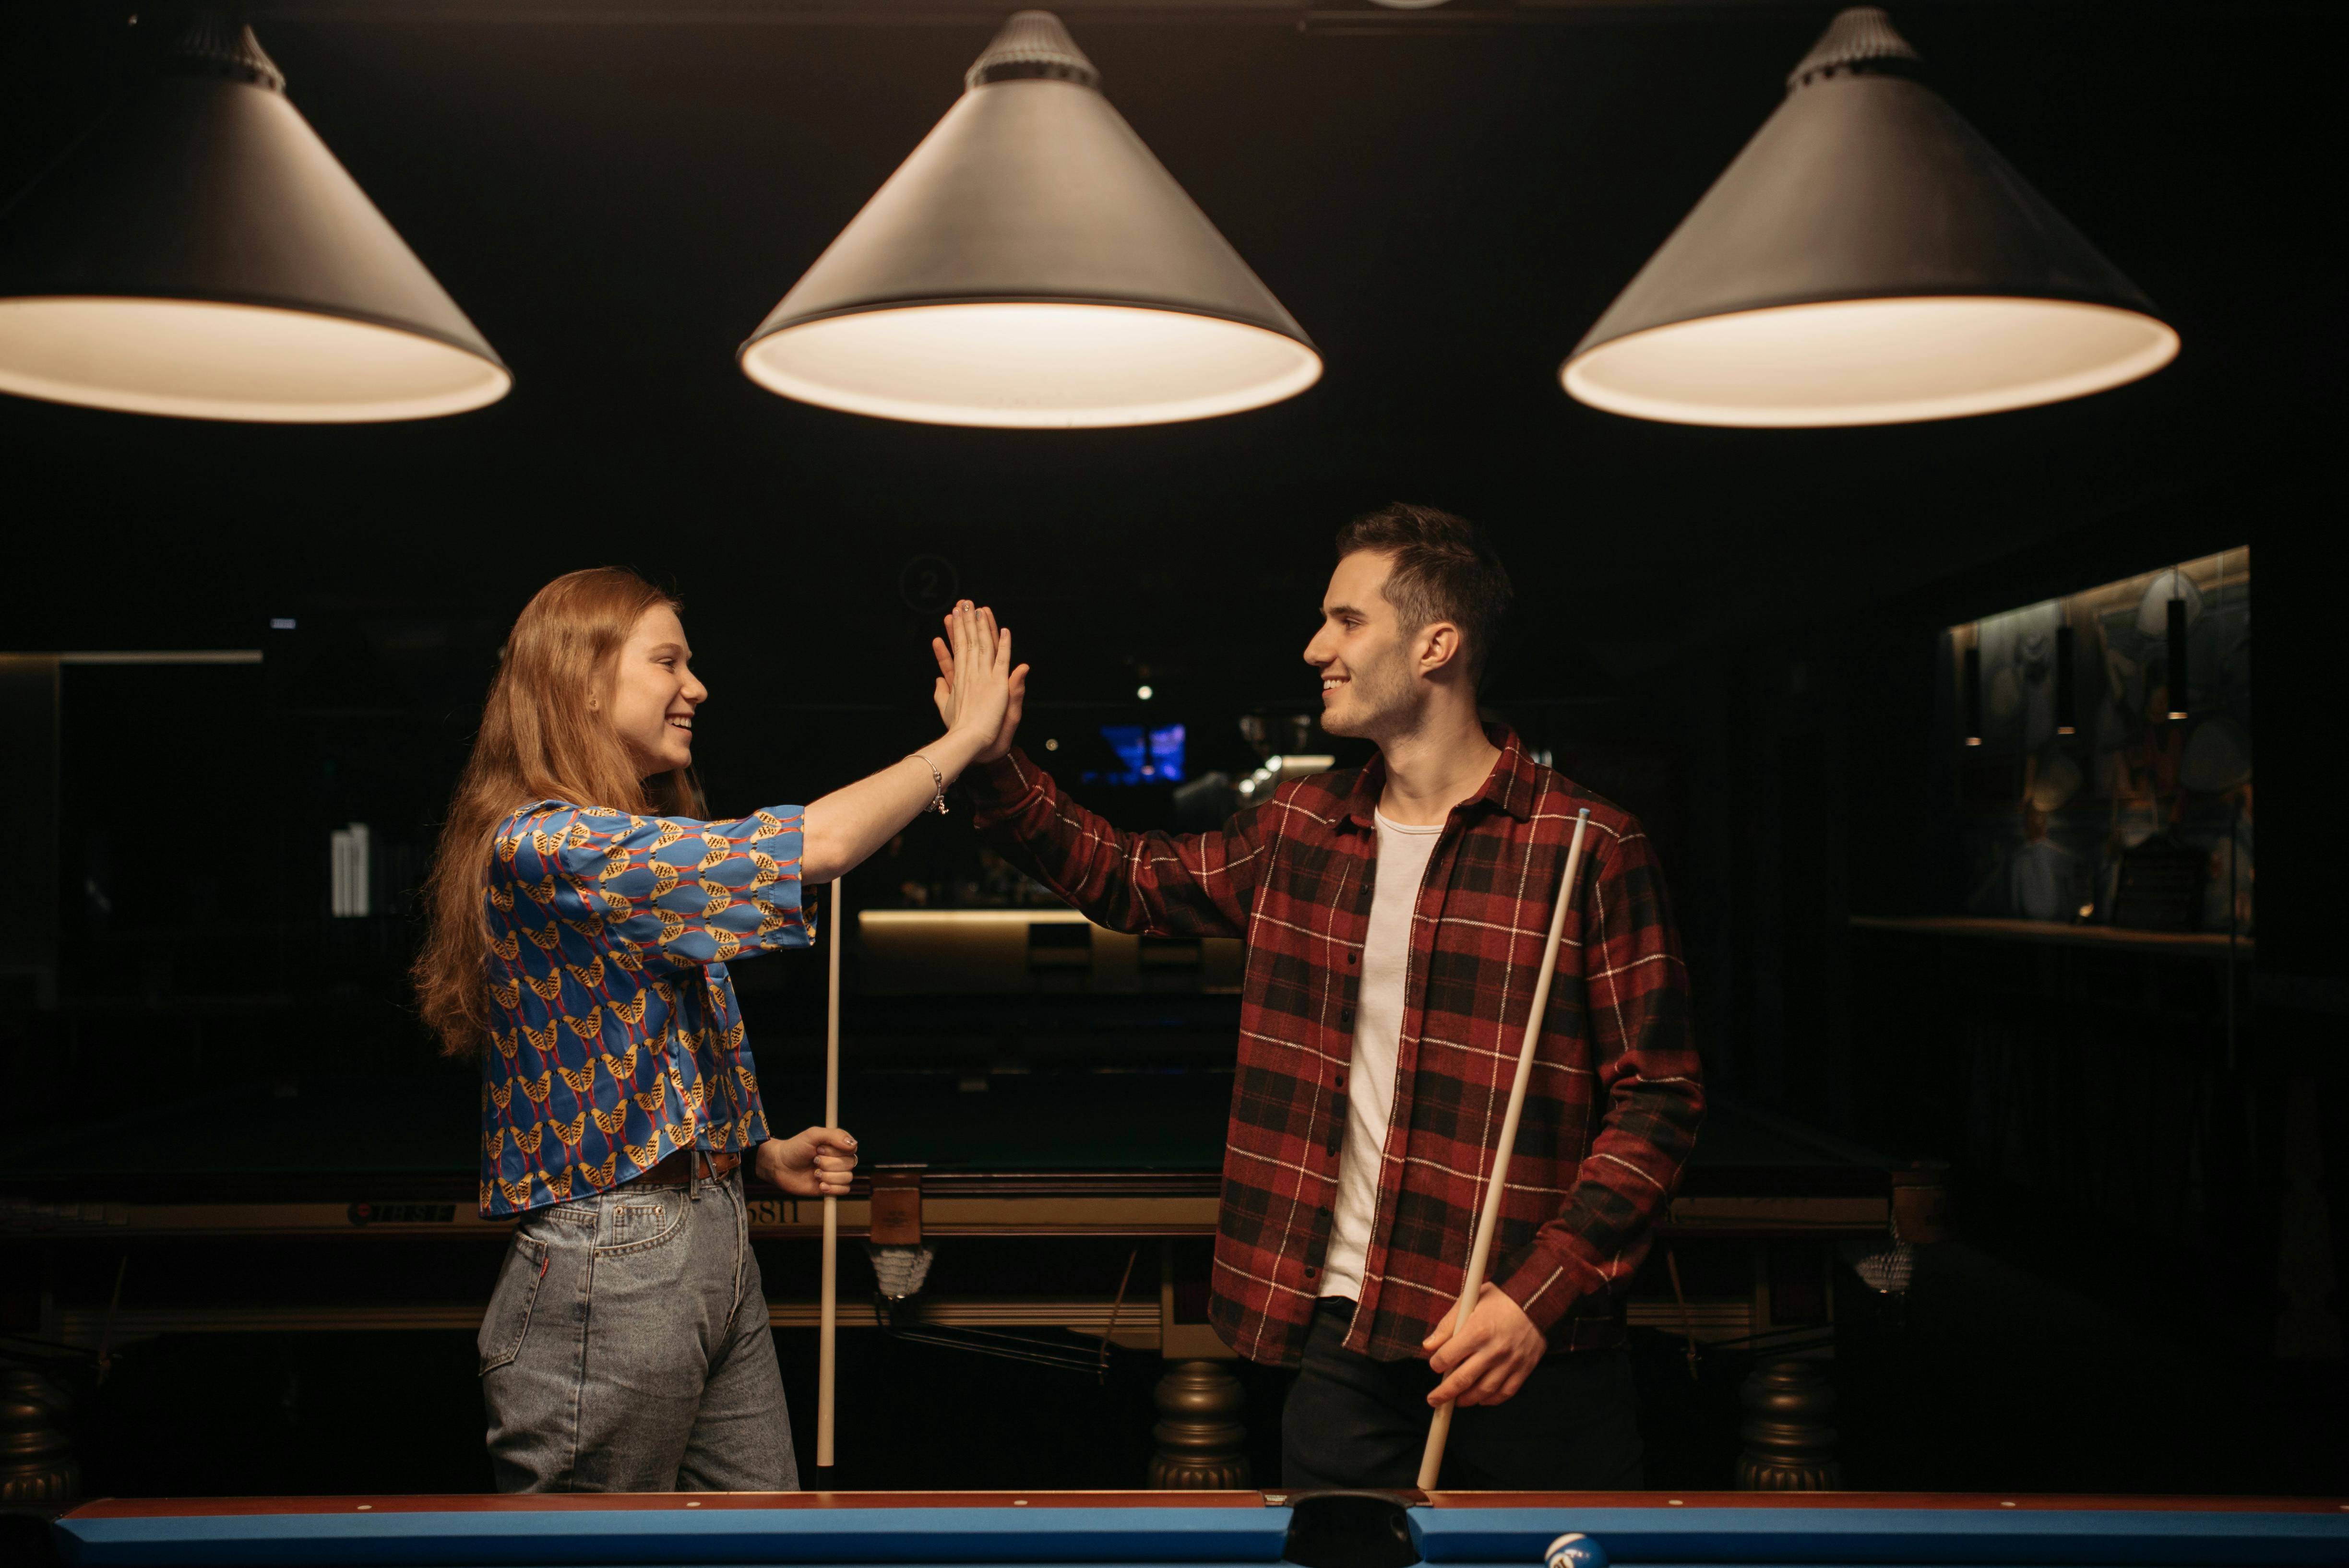 Un hombre y una mujer chocando los cinco cerca de una mesa de billar | Fuente: Pexels